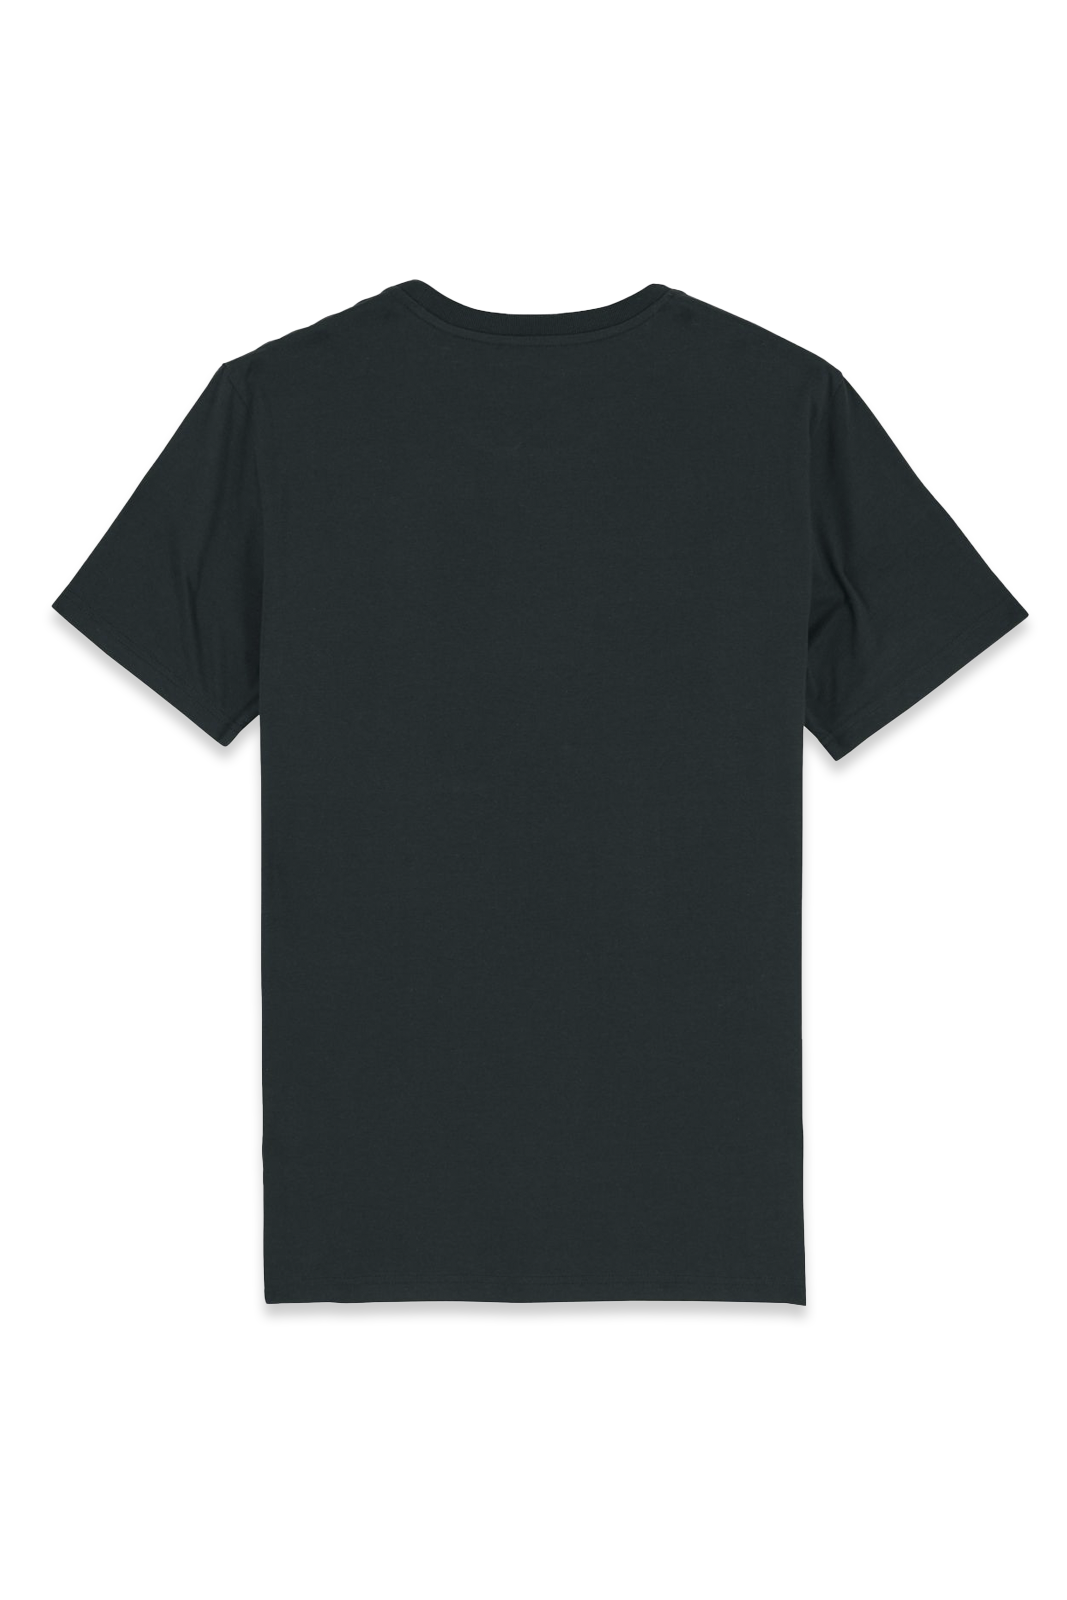 T-Shirt - LizaGrimm - Schafkatze